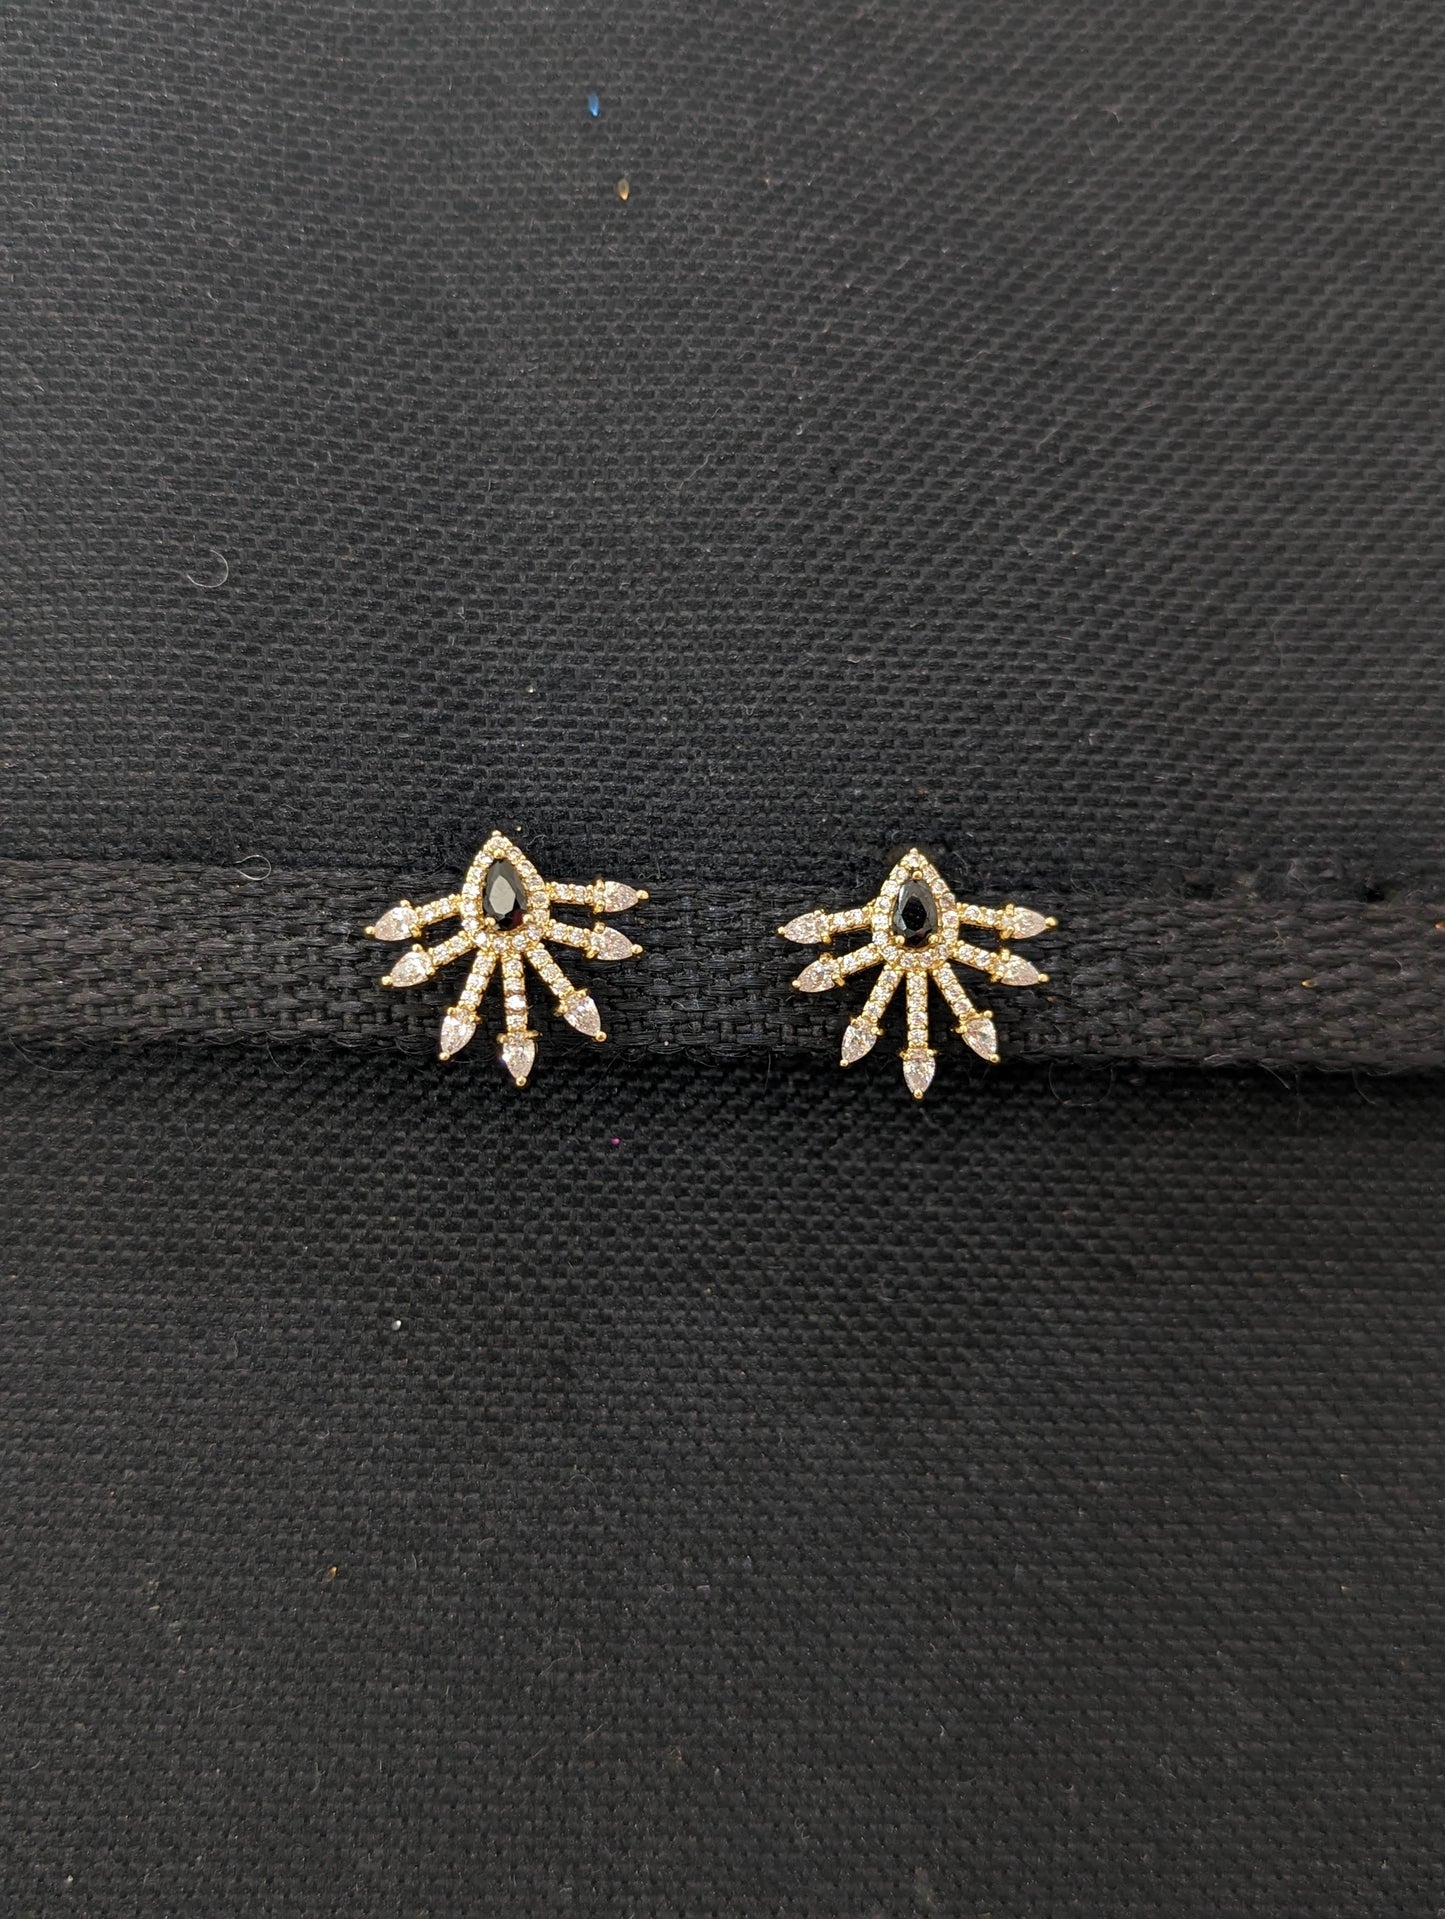 Spike design CZ stud earrings - Simpliful